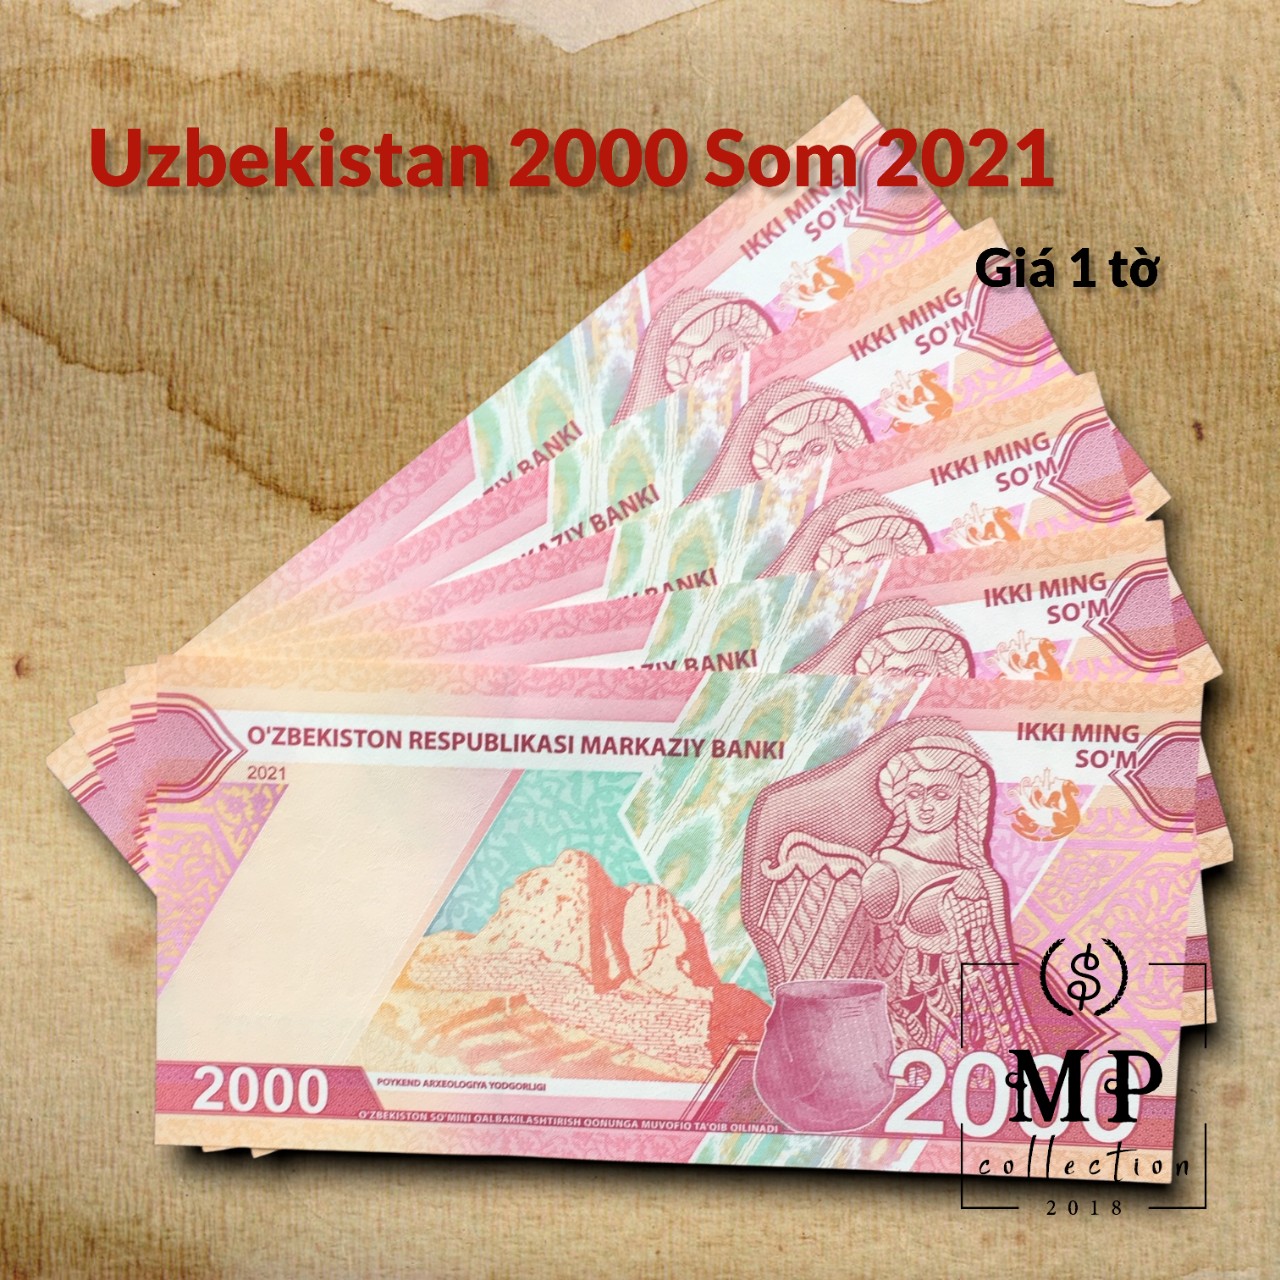 Tiền sưu tầm Uzbekistan 2000 Som 2021